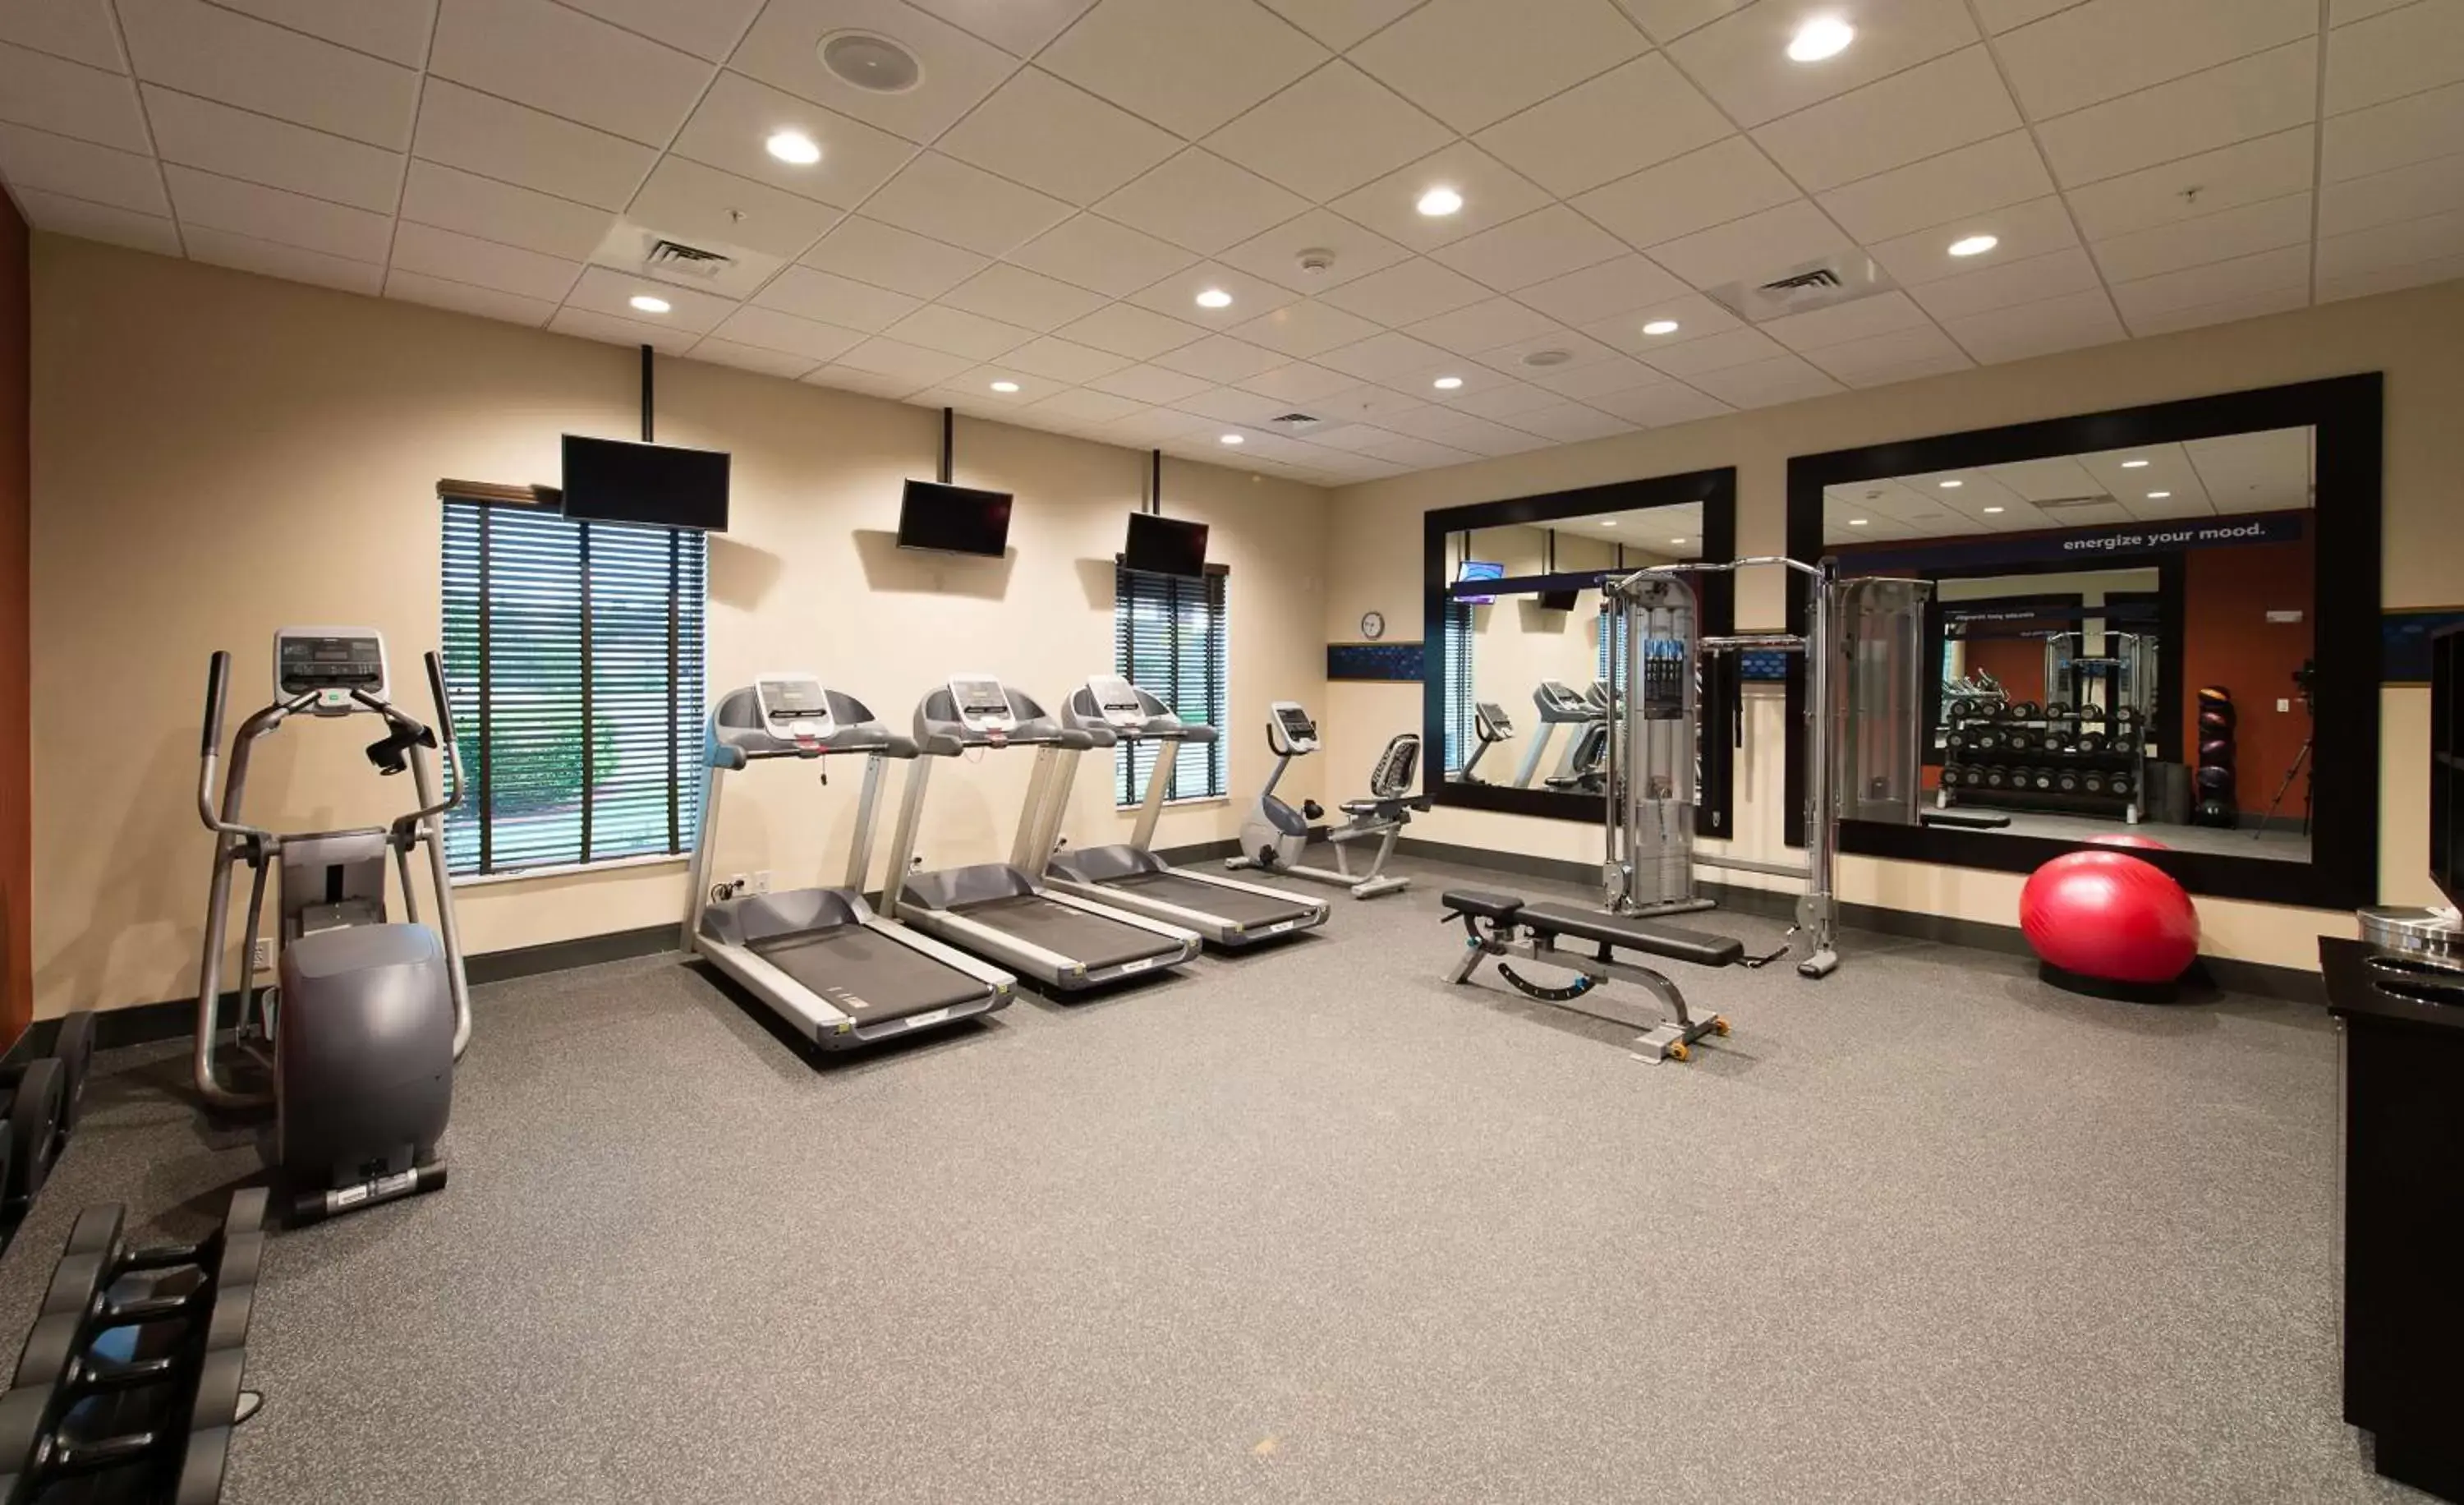 Fitness centre/facilities, Fitness Center/Facilities in Hampton Inn & Suites Orangeburg, SC